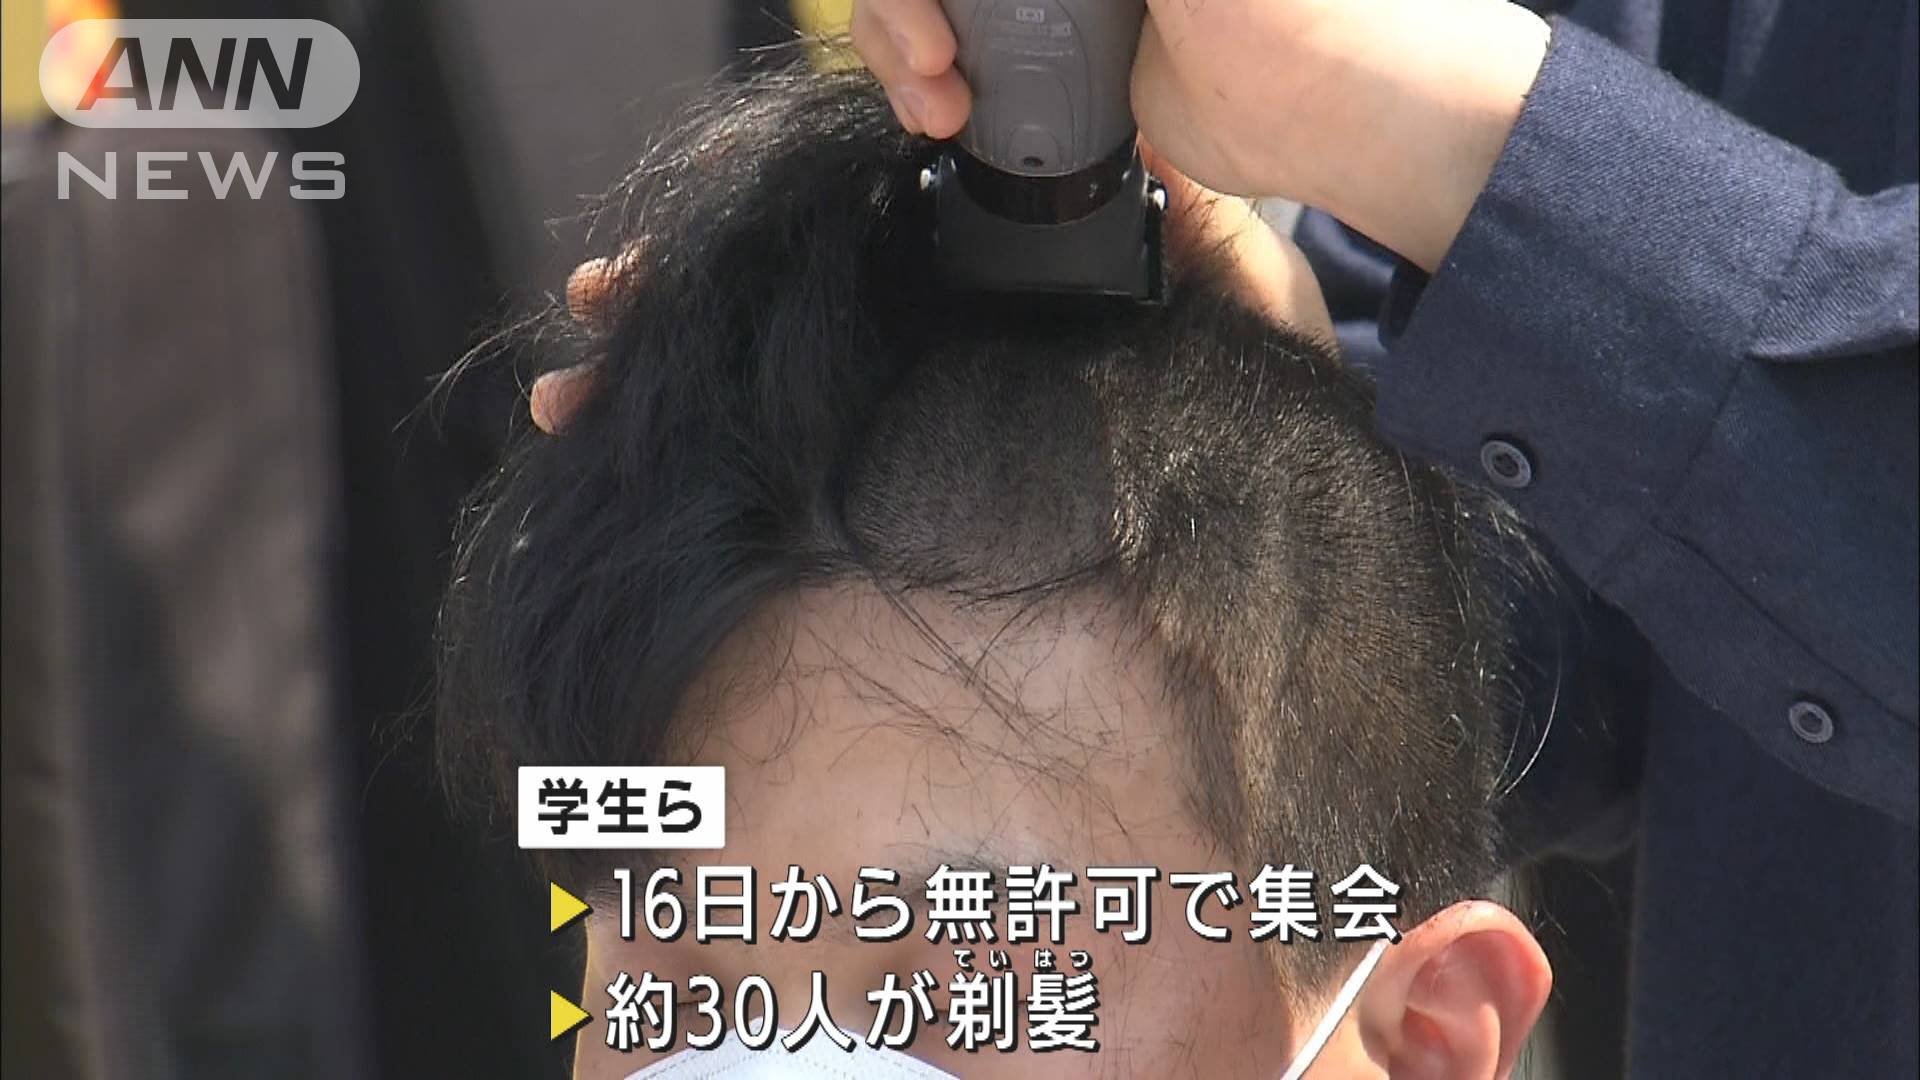 学生ら約30人が剃髪 処理水 放出に抗議 韓国 テレ朝news テレビ朝日のニュースサイト